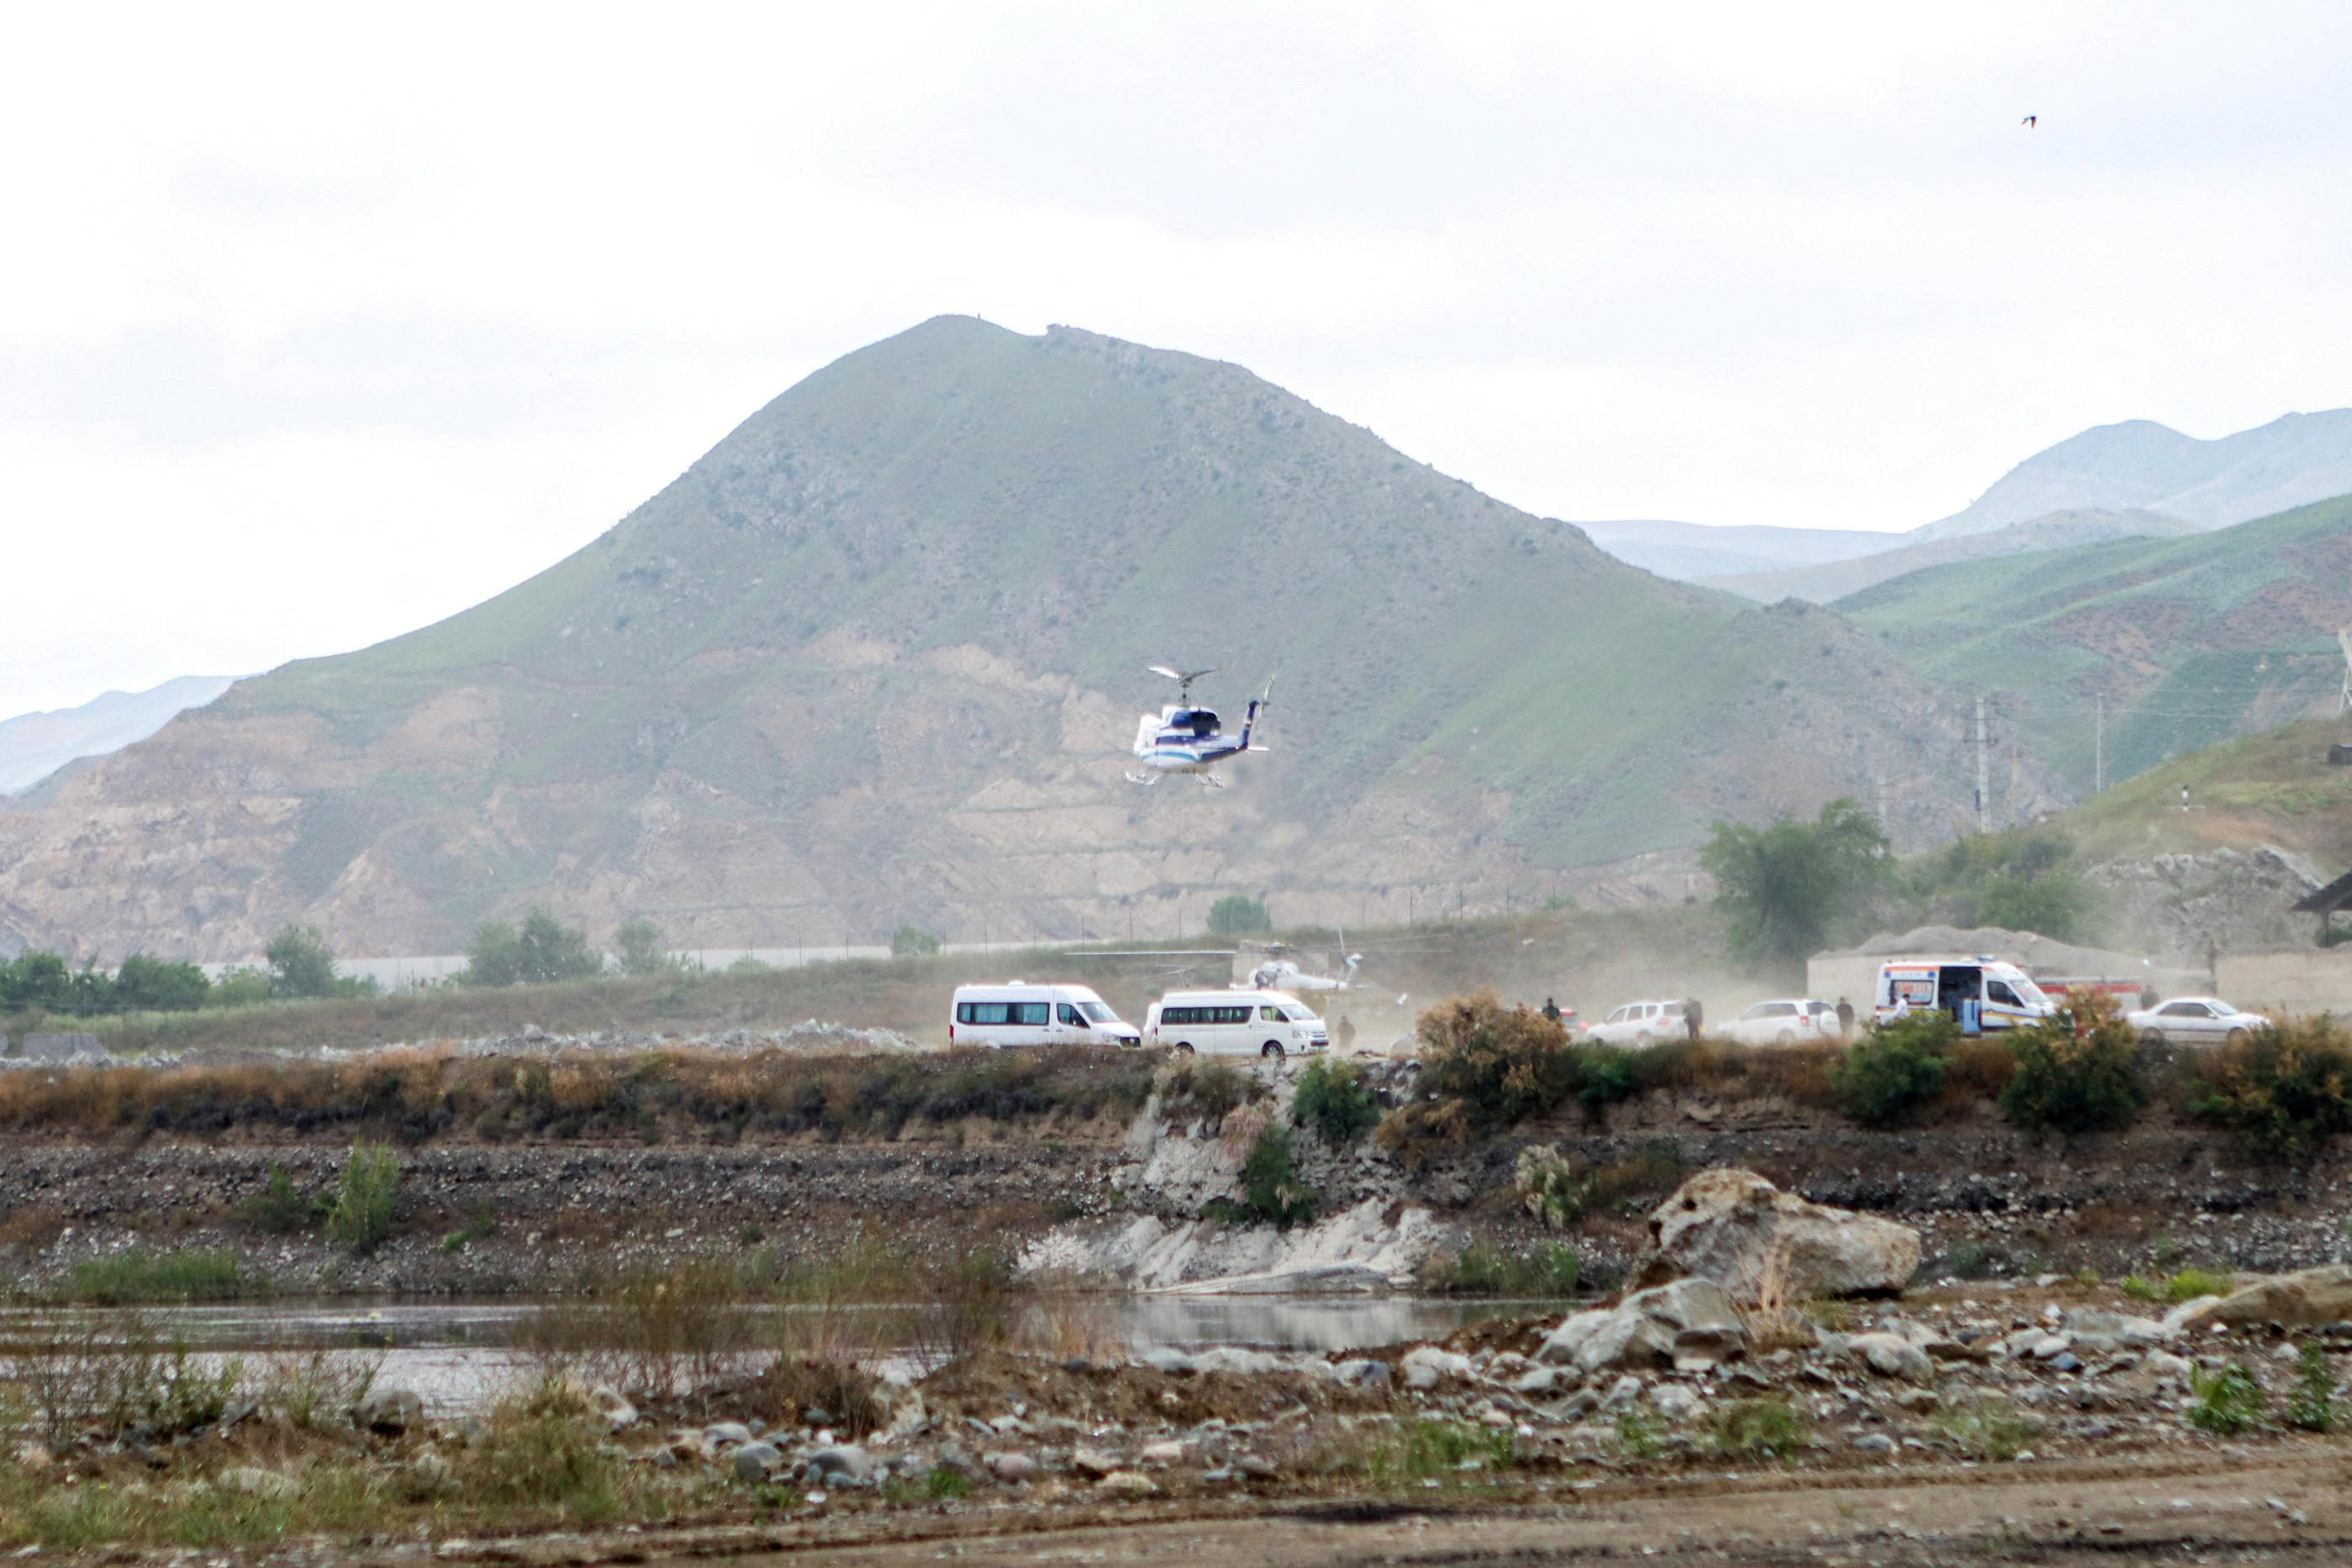 Un hélicoptère transportant le président Ebrahim Raïssi avait décollé près de la frontière entre l'Iran et l'Azerbaijan dimanche. IRNA/WANA (West Asia News Agency) via REUTERS 